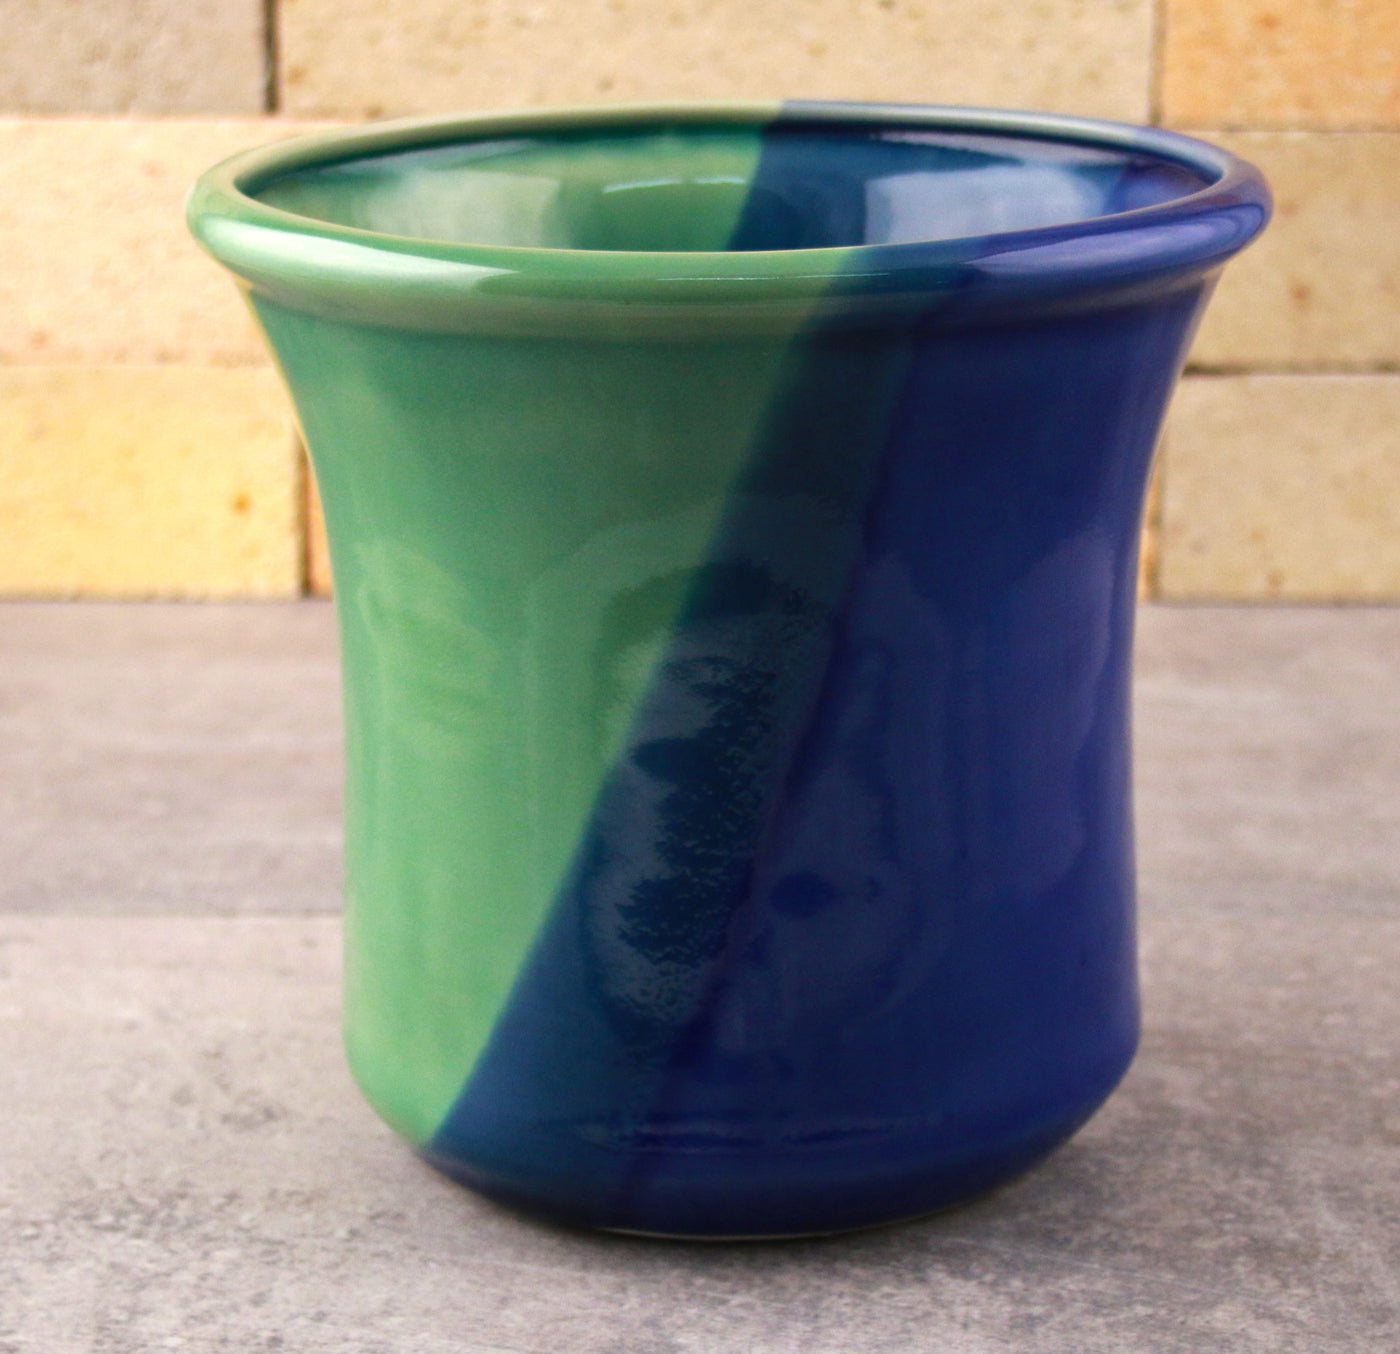 Cocinaware Cobalt Blue Silicone Pot Holder